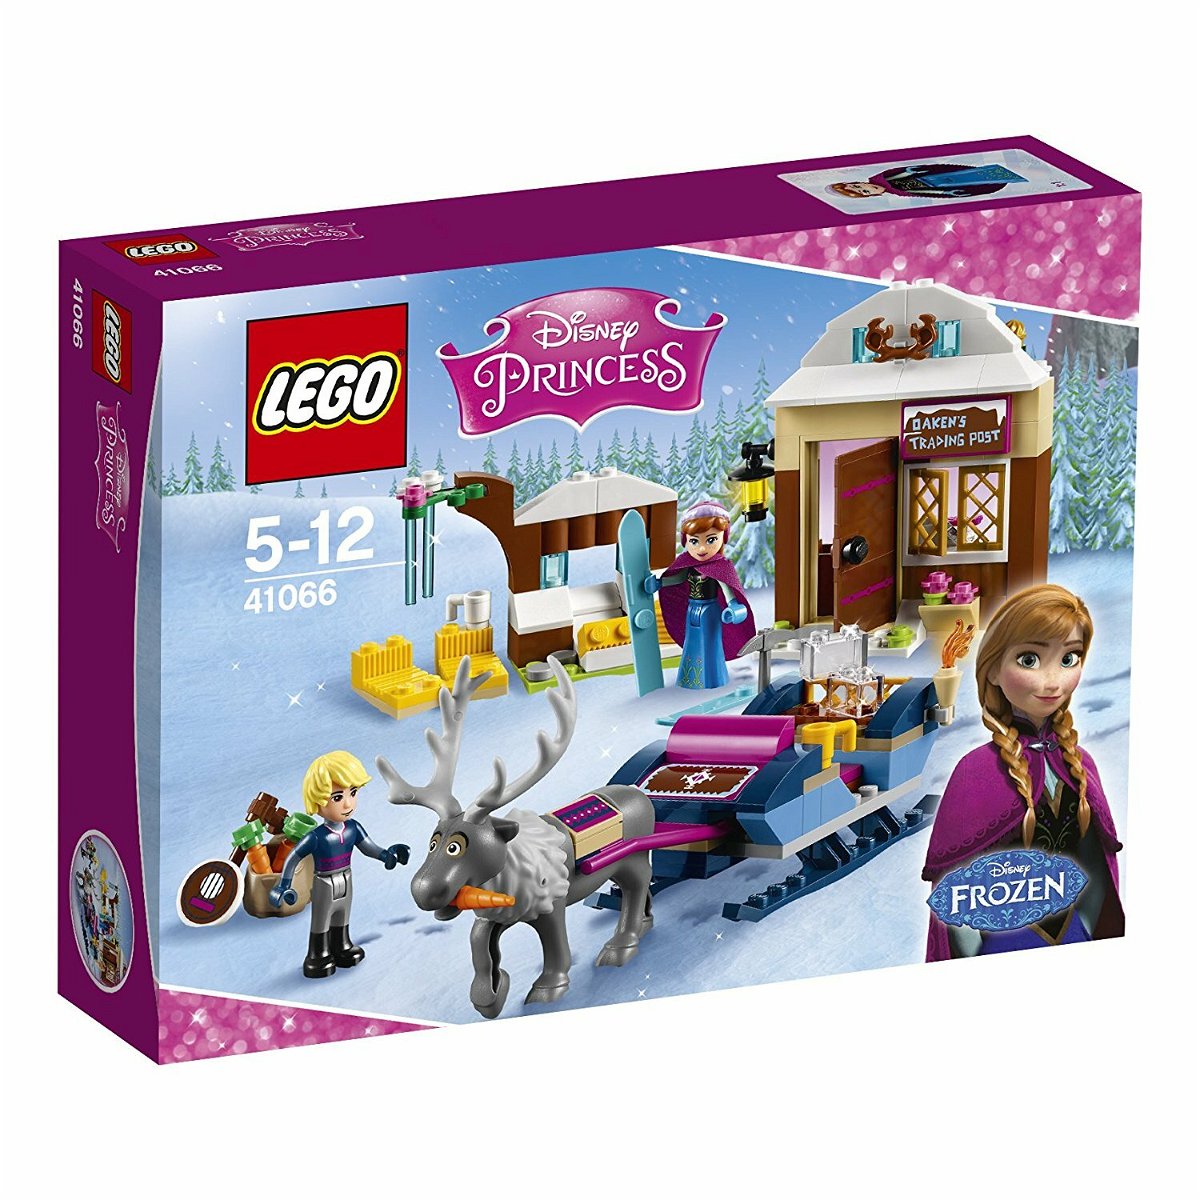 Dettagli del box di LEGO L'avventura sulla slitta di Anna e Kristoff